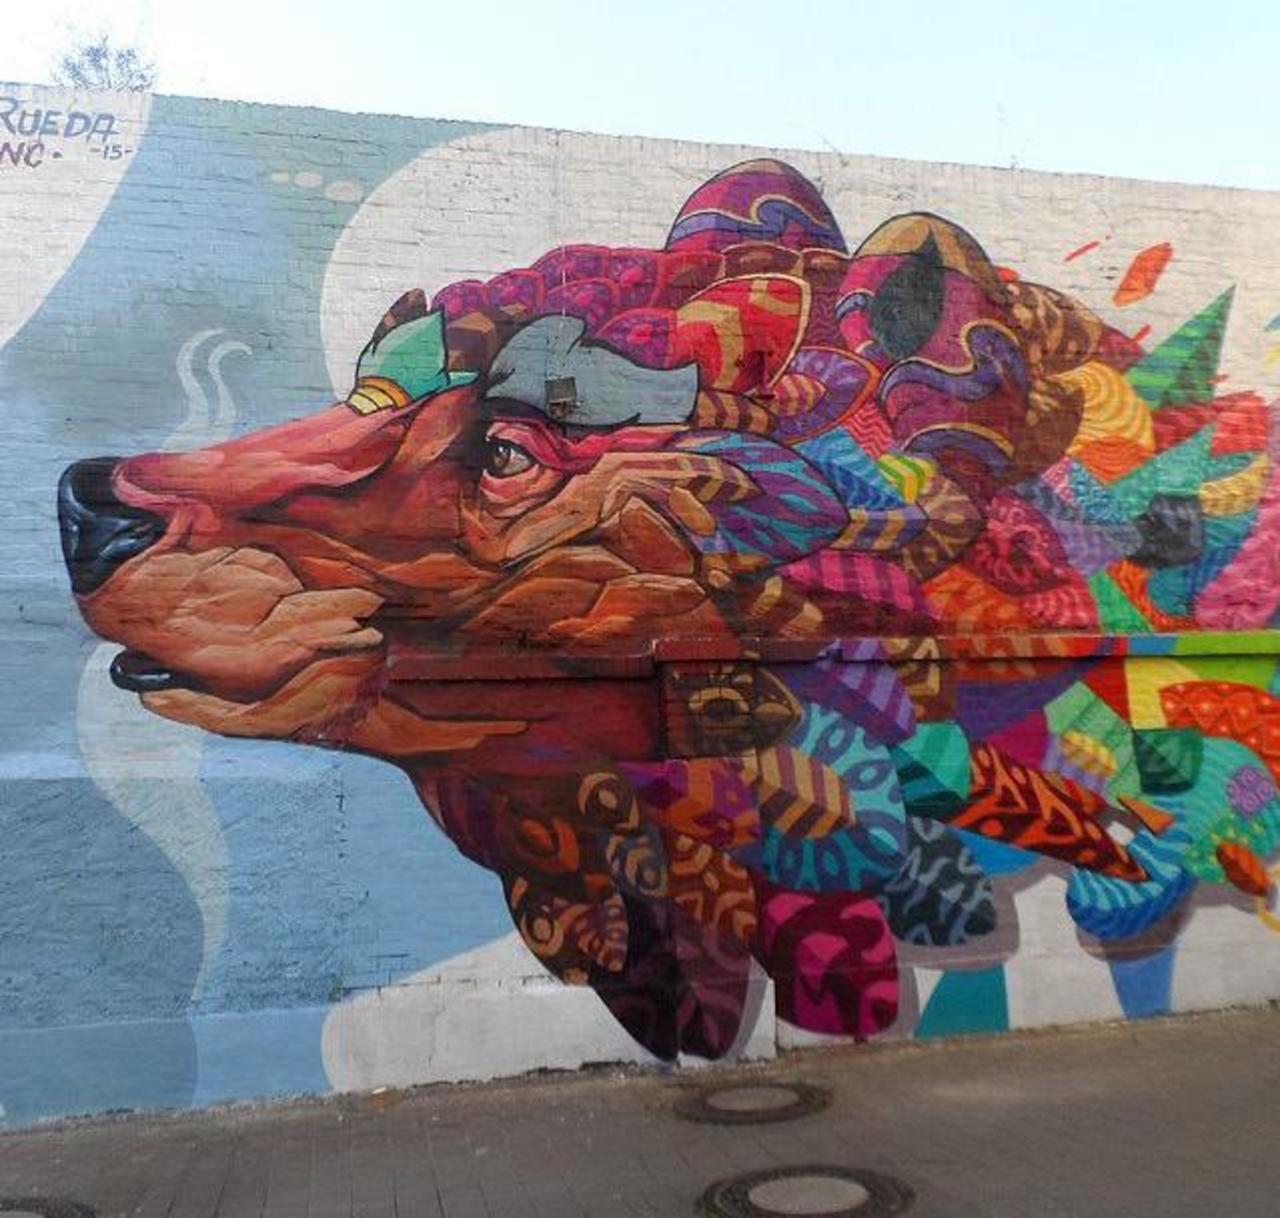 Farid Rueda Street Art 

#art #graffiti #mural #streetart http://t.co/cBRaBcWQVC